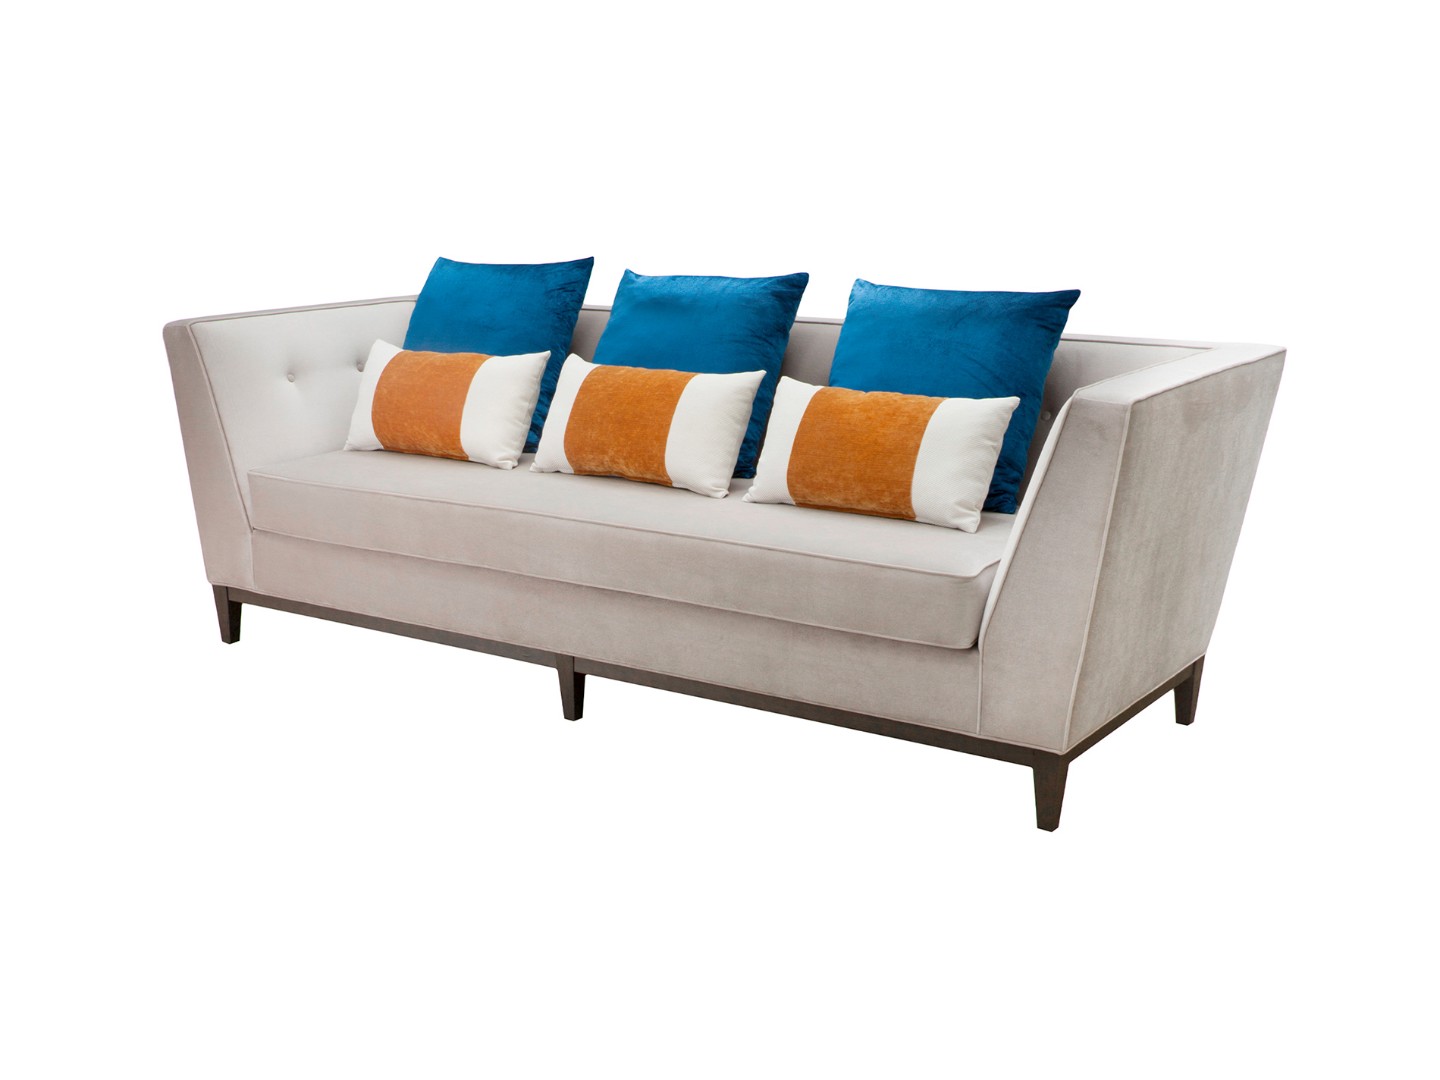 Купить Прямой диван Mark (Россия, ROOMA design \u0026 furniture) за 224 000рублей